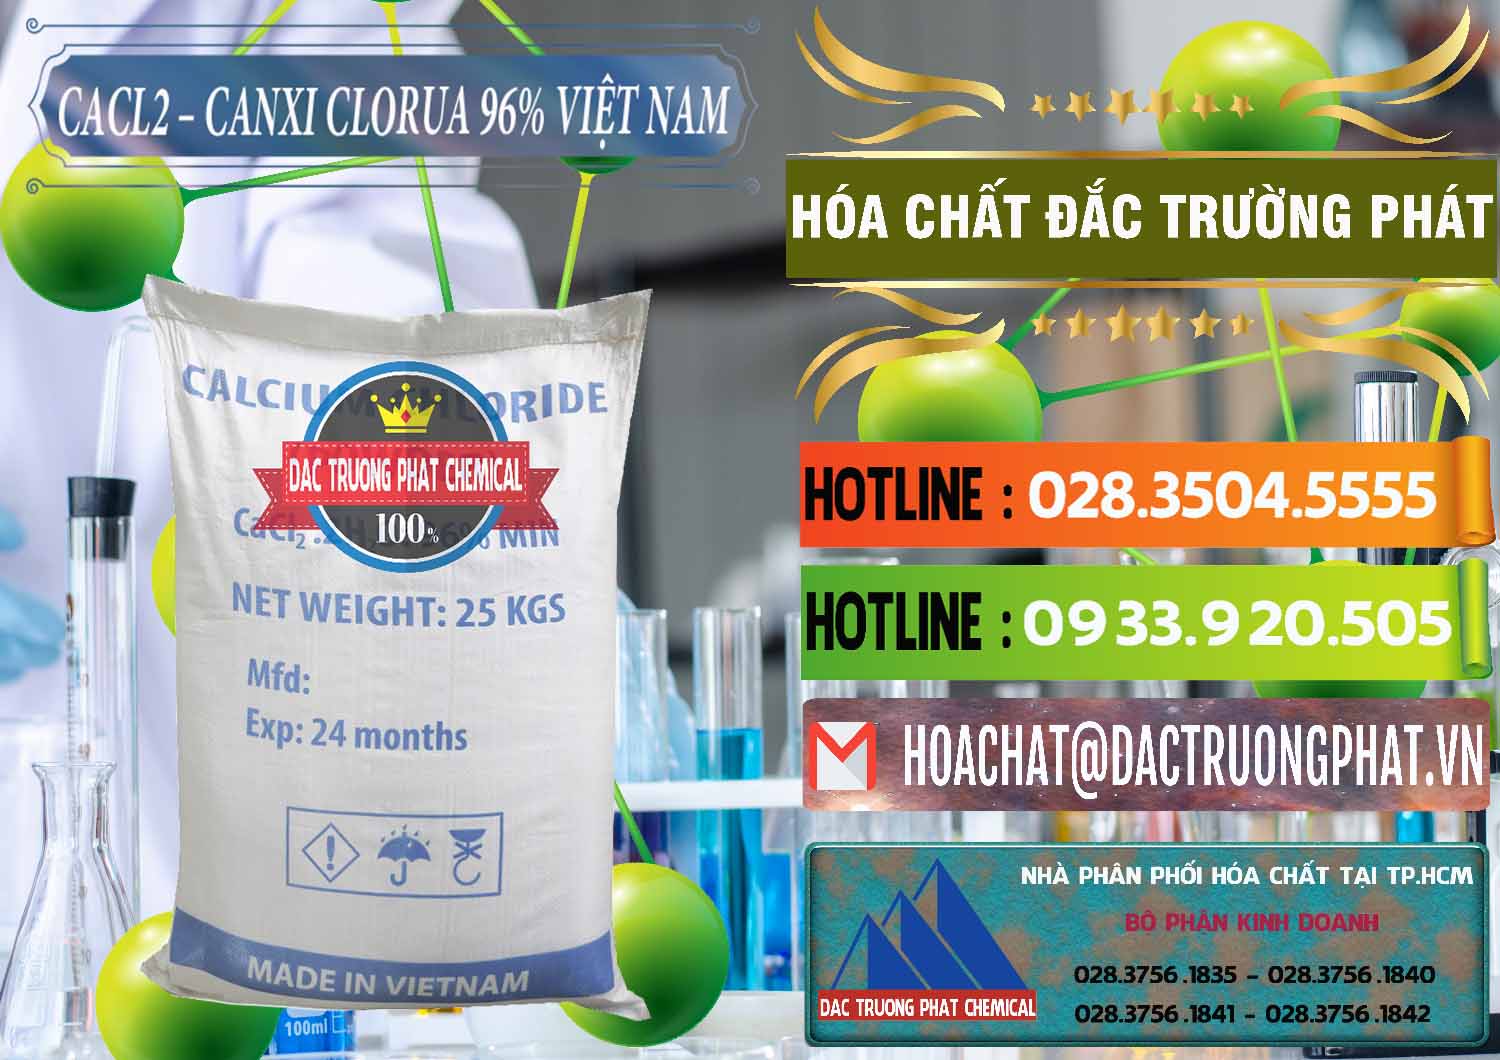 Phân phối - cung ứng CaCl2 – Canxi Clorua 96% Việt Nam - 0236 - Kinh doanh và bán hóa chất tại TP.HCM - cungcaphoachat.com.vn